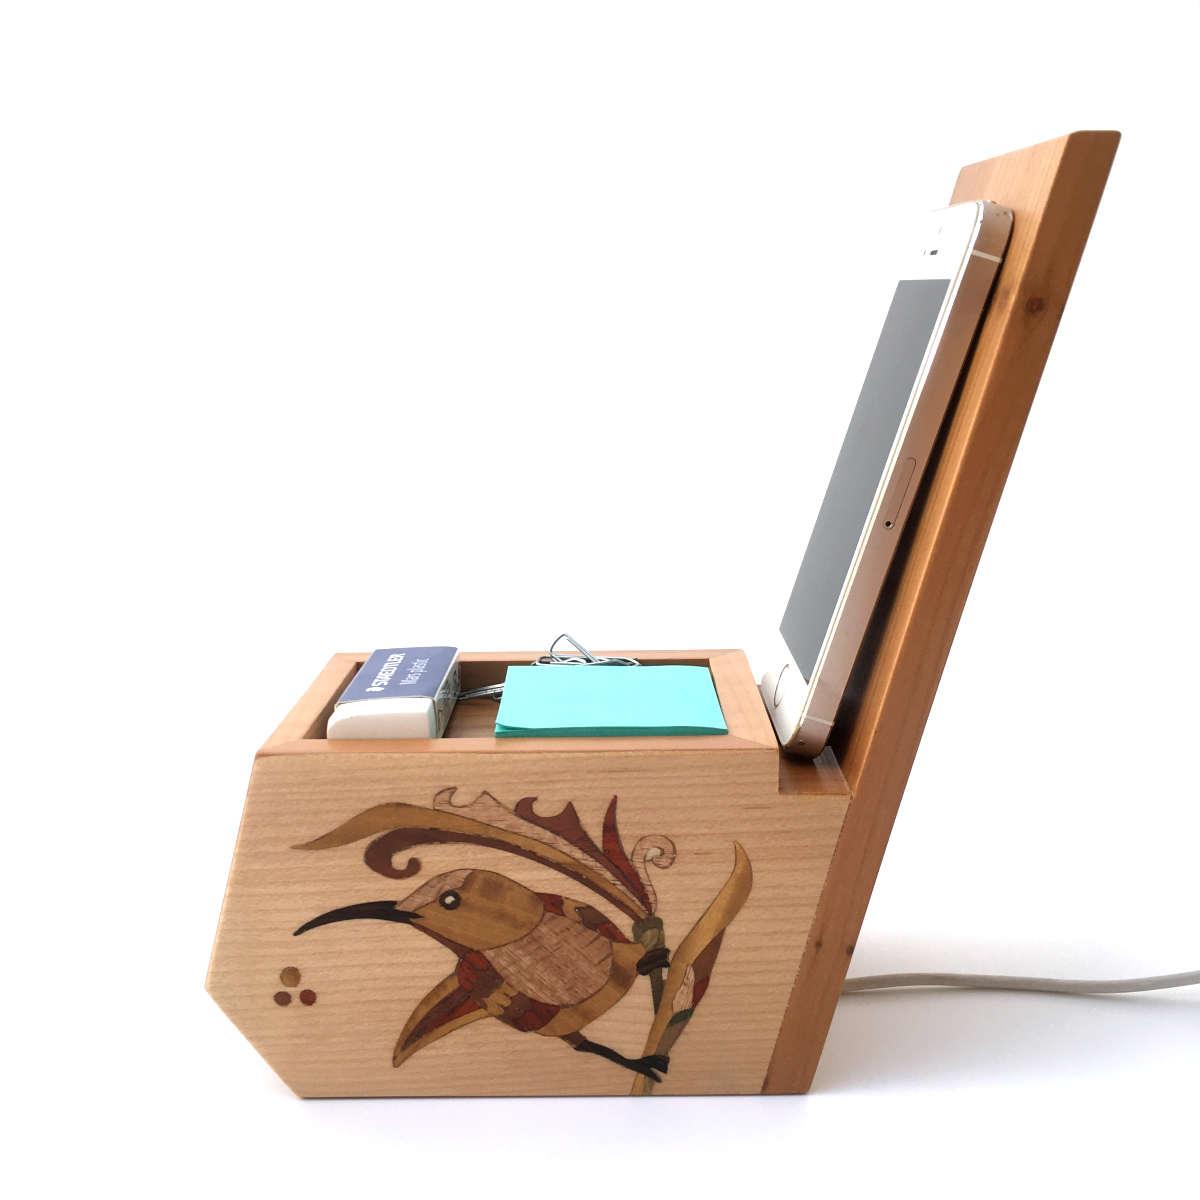 Organisateur de bureau en bois avec support téléphone, marqueterie